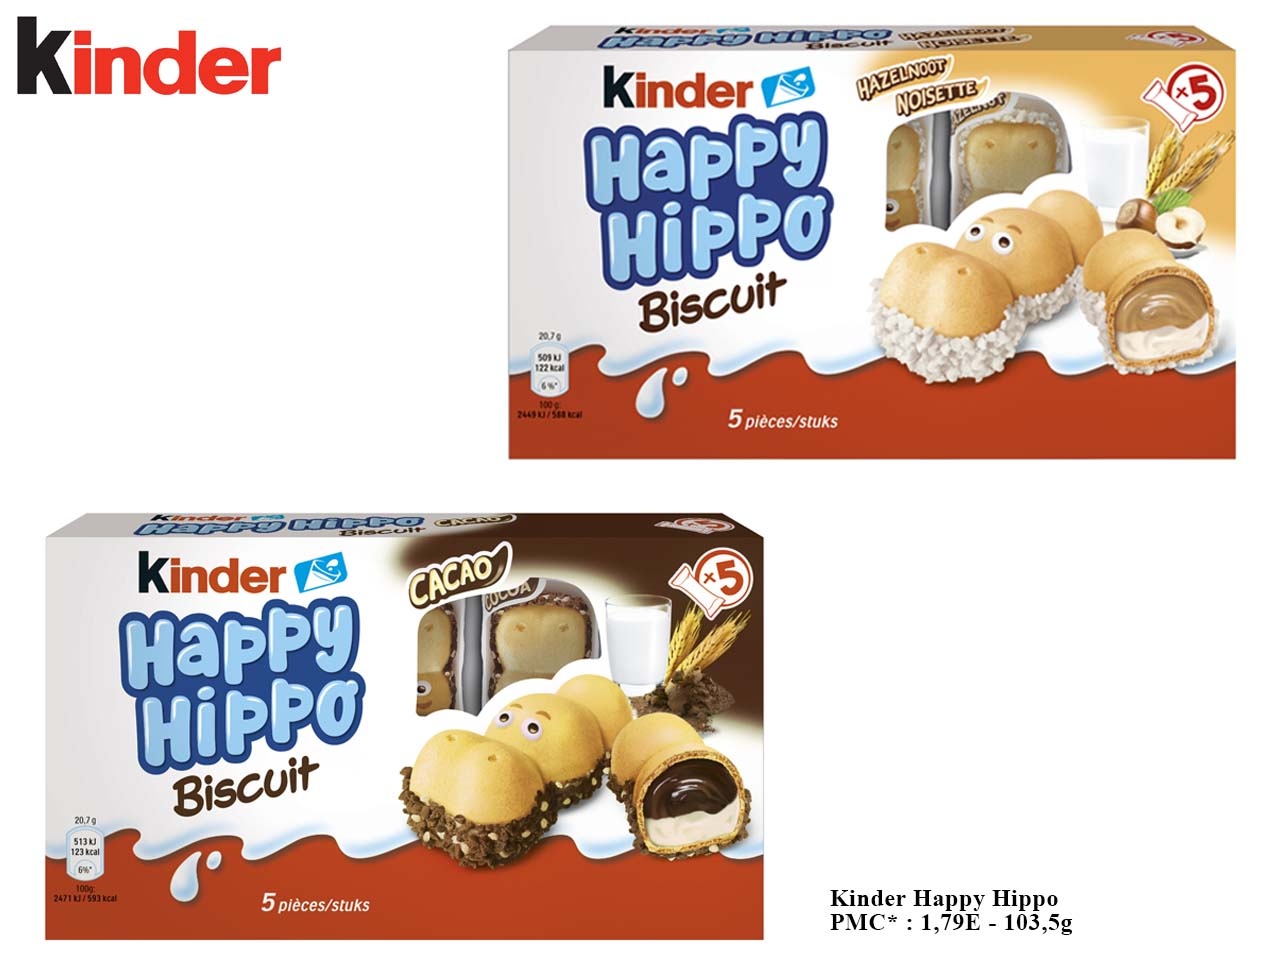 Les Kinder Cards, le nouveau biscuit de Kinder à découvrir prochainement